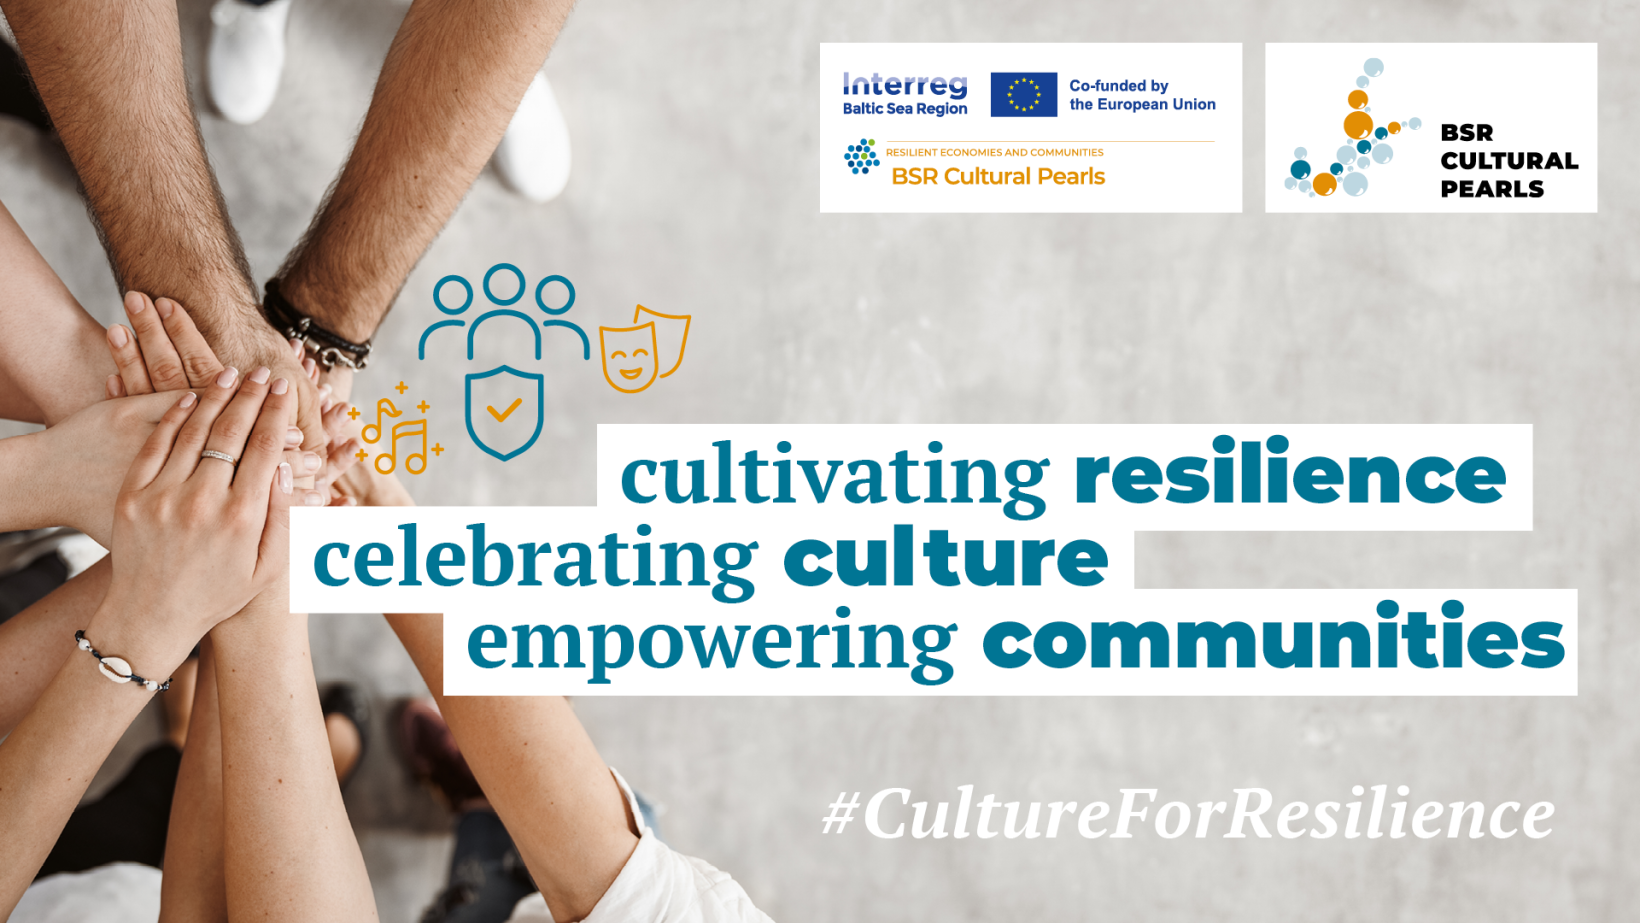 zdjęcie dłoni ułożonych na sobie jedna na drugą, napis "cultivating resilience, celebrating culture, empowering communities"